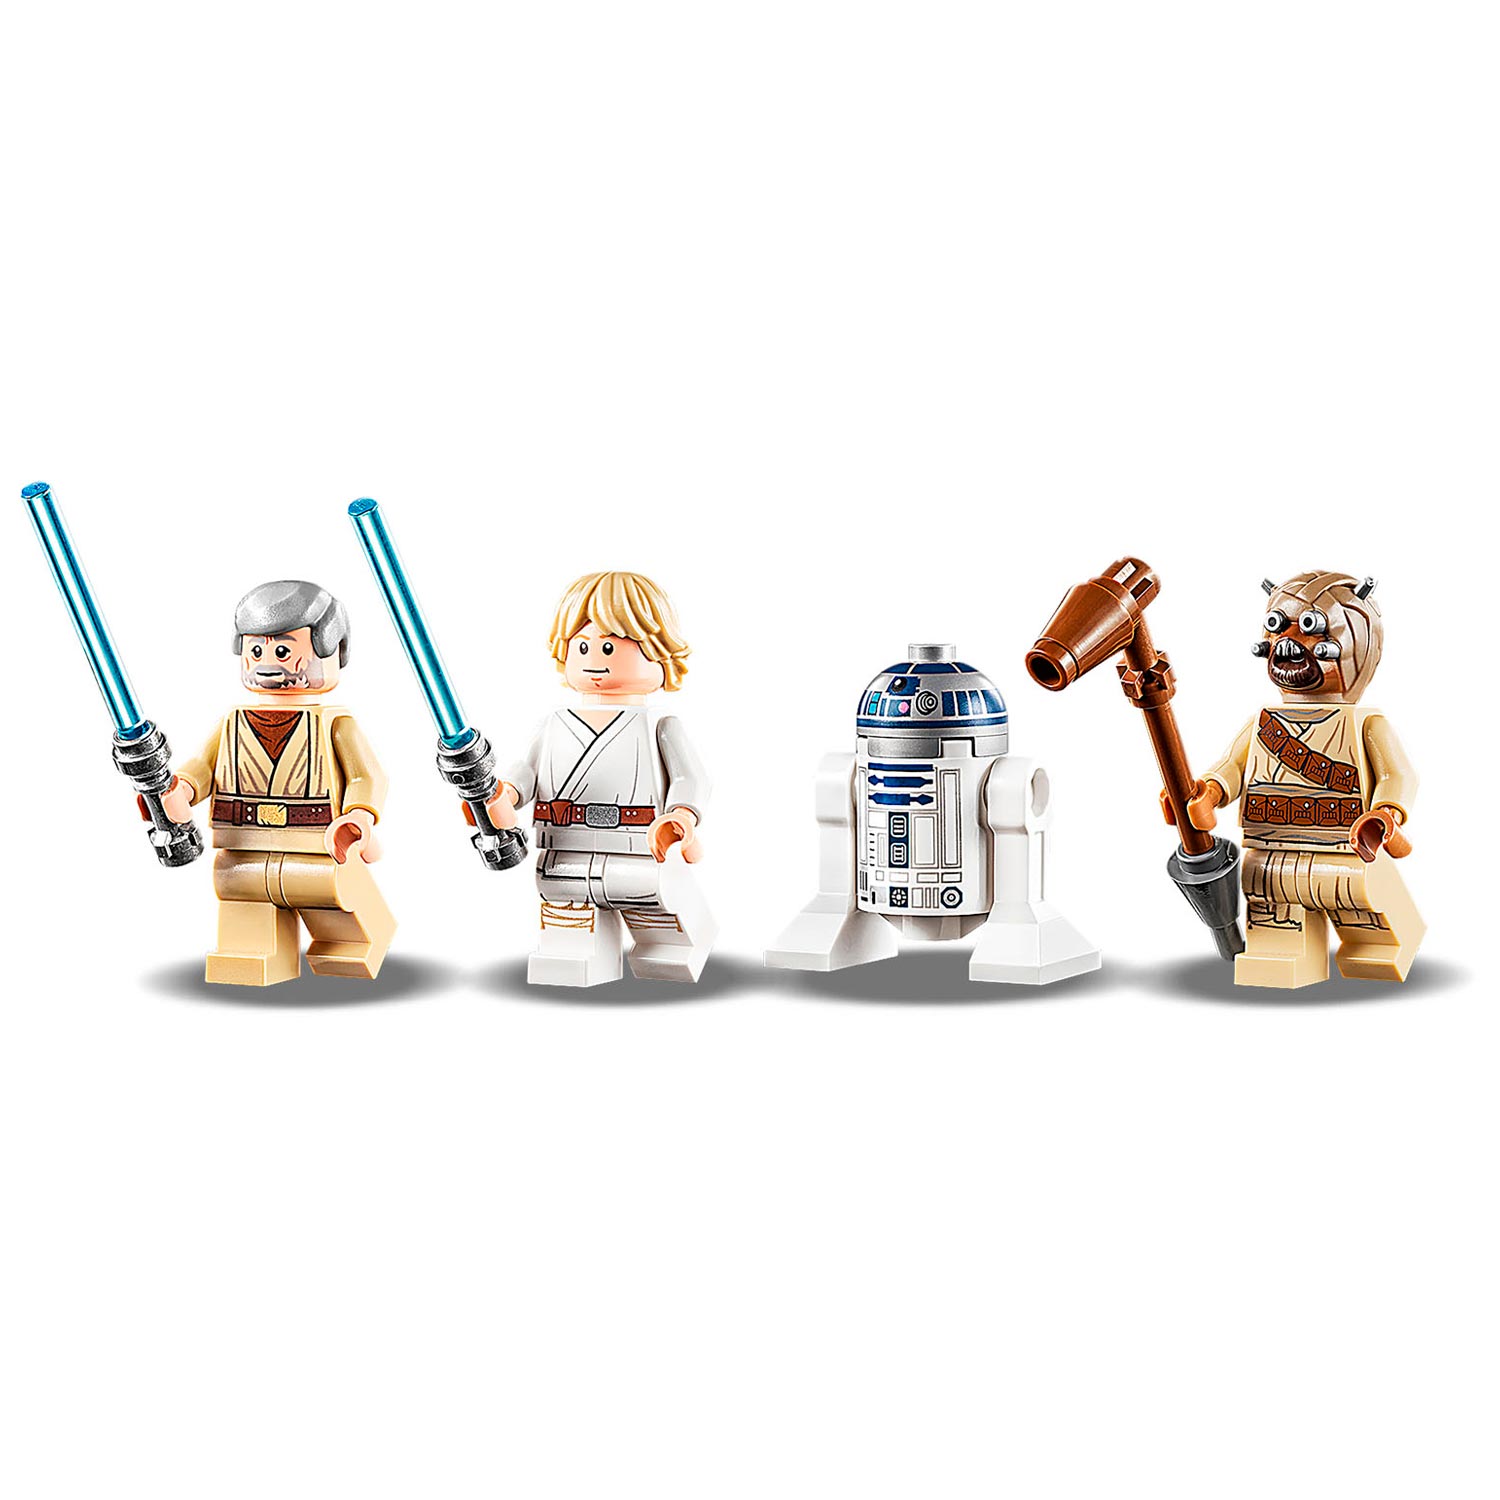 LEGO Star Wars 75270 Obi-Wans hut